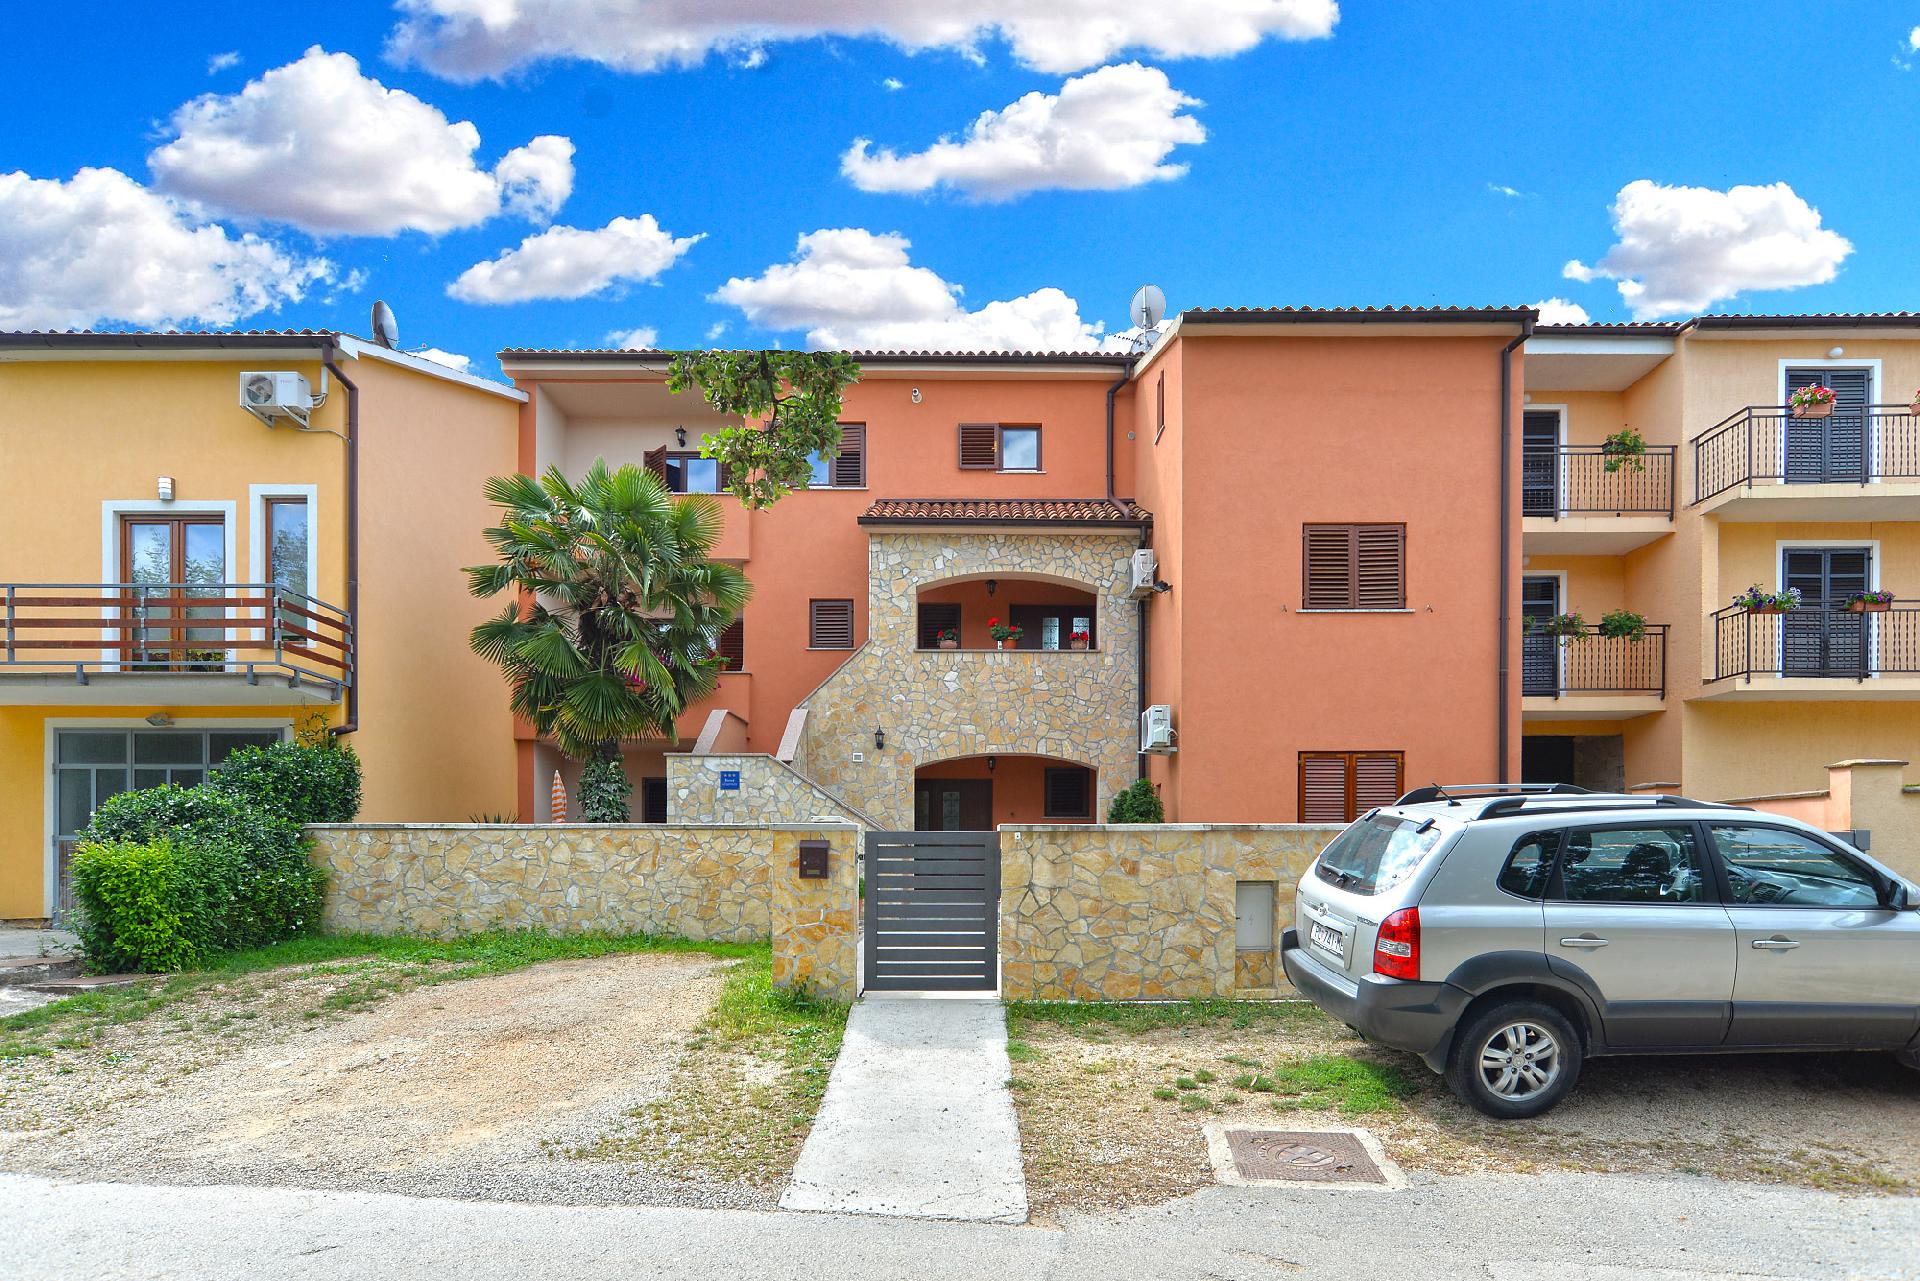 Ferienwohnung für 4 Personen ca. 40 m² i  in Istrien